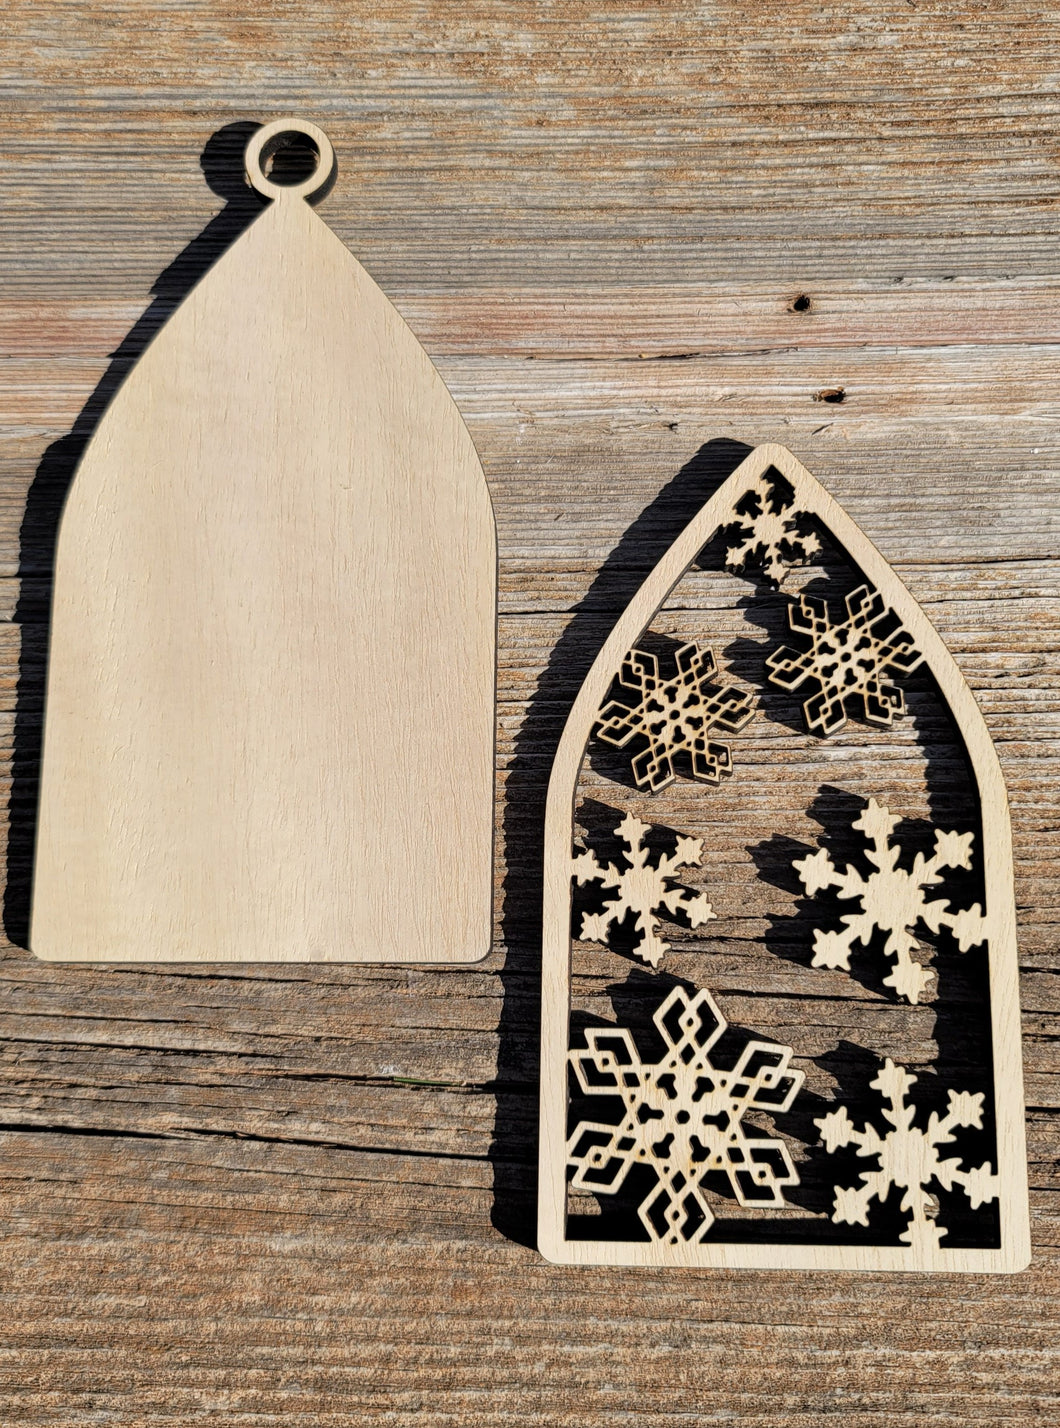 Farmhouse Christmas Ornament - Snowflakes two pieces